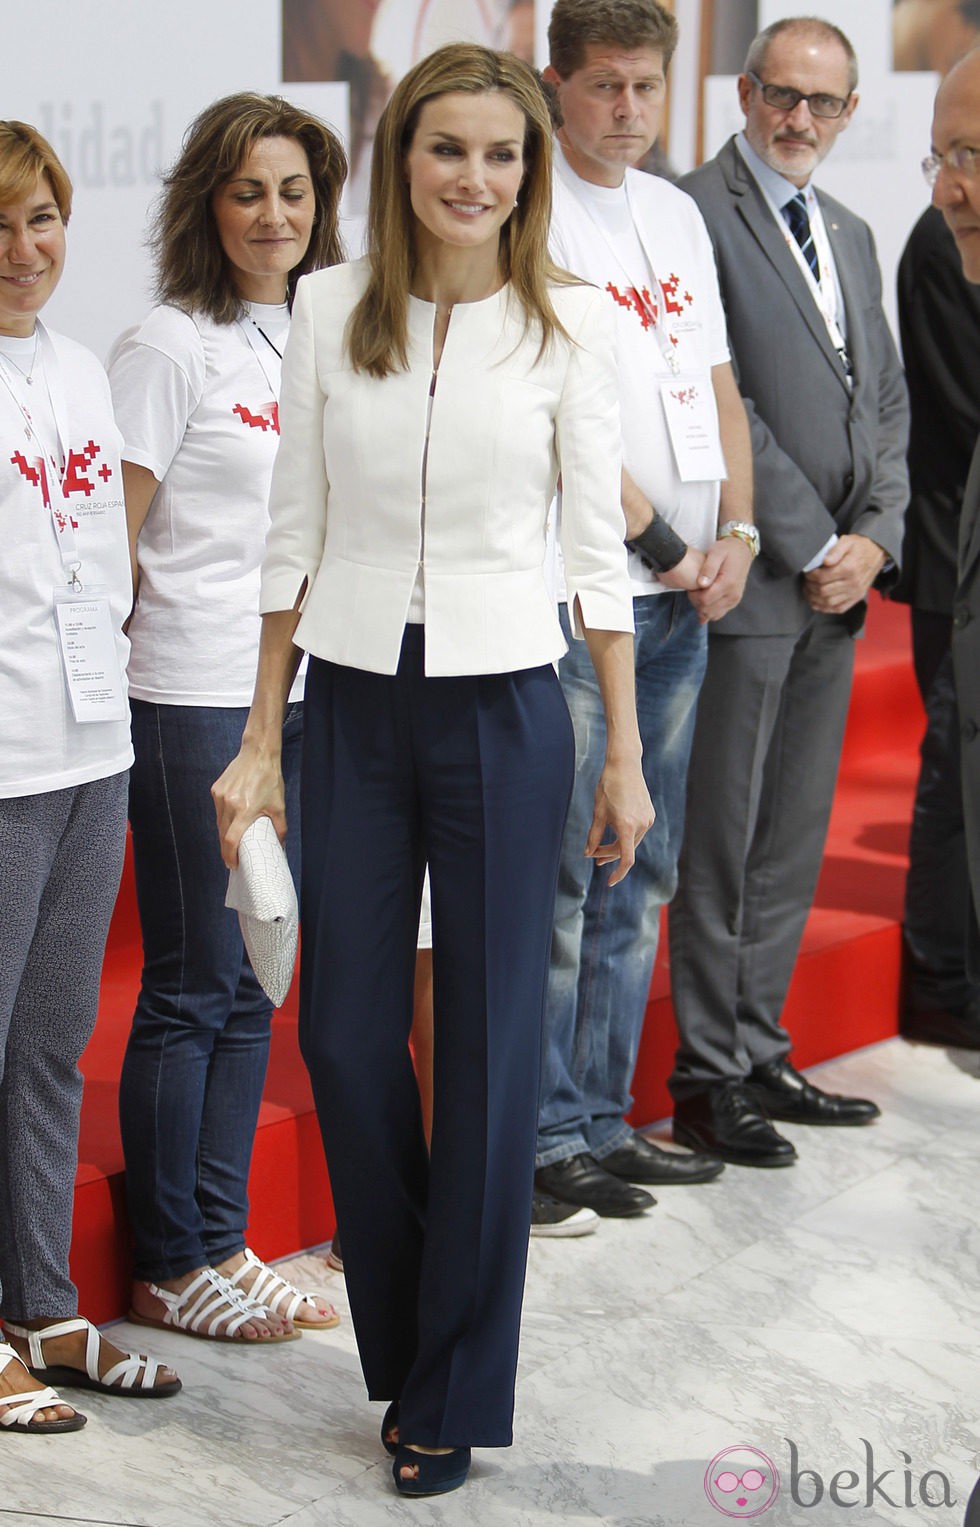 La Reina Letizia, todo sonrisas en el 150 aniversario de Cruz Roja Española